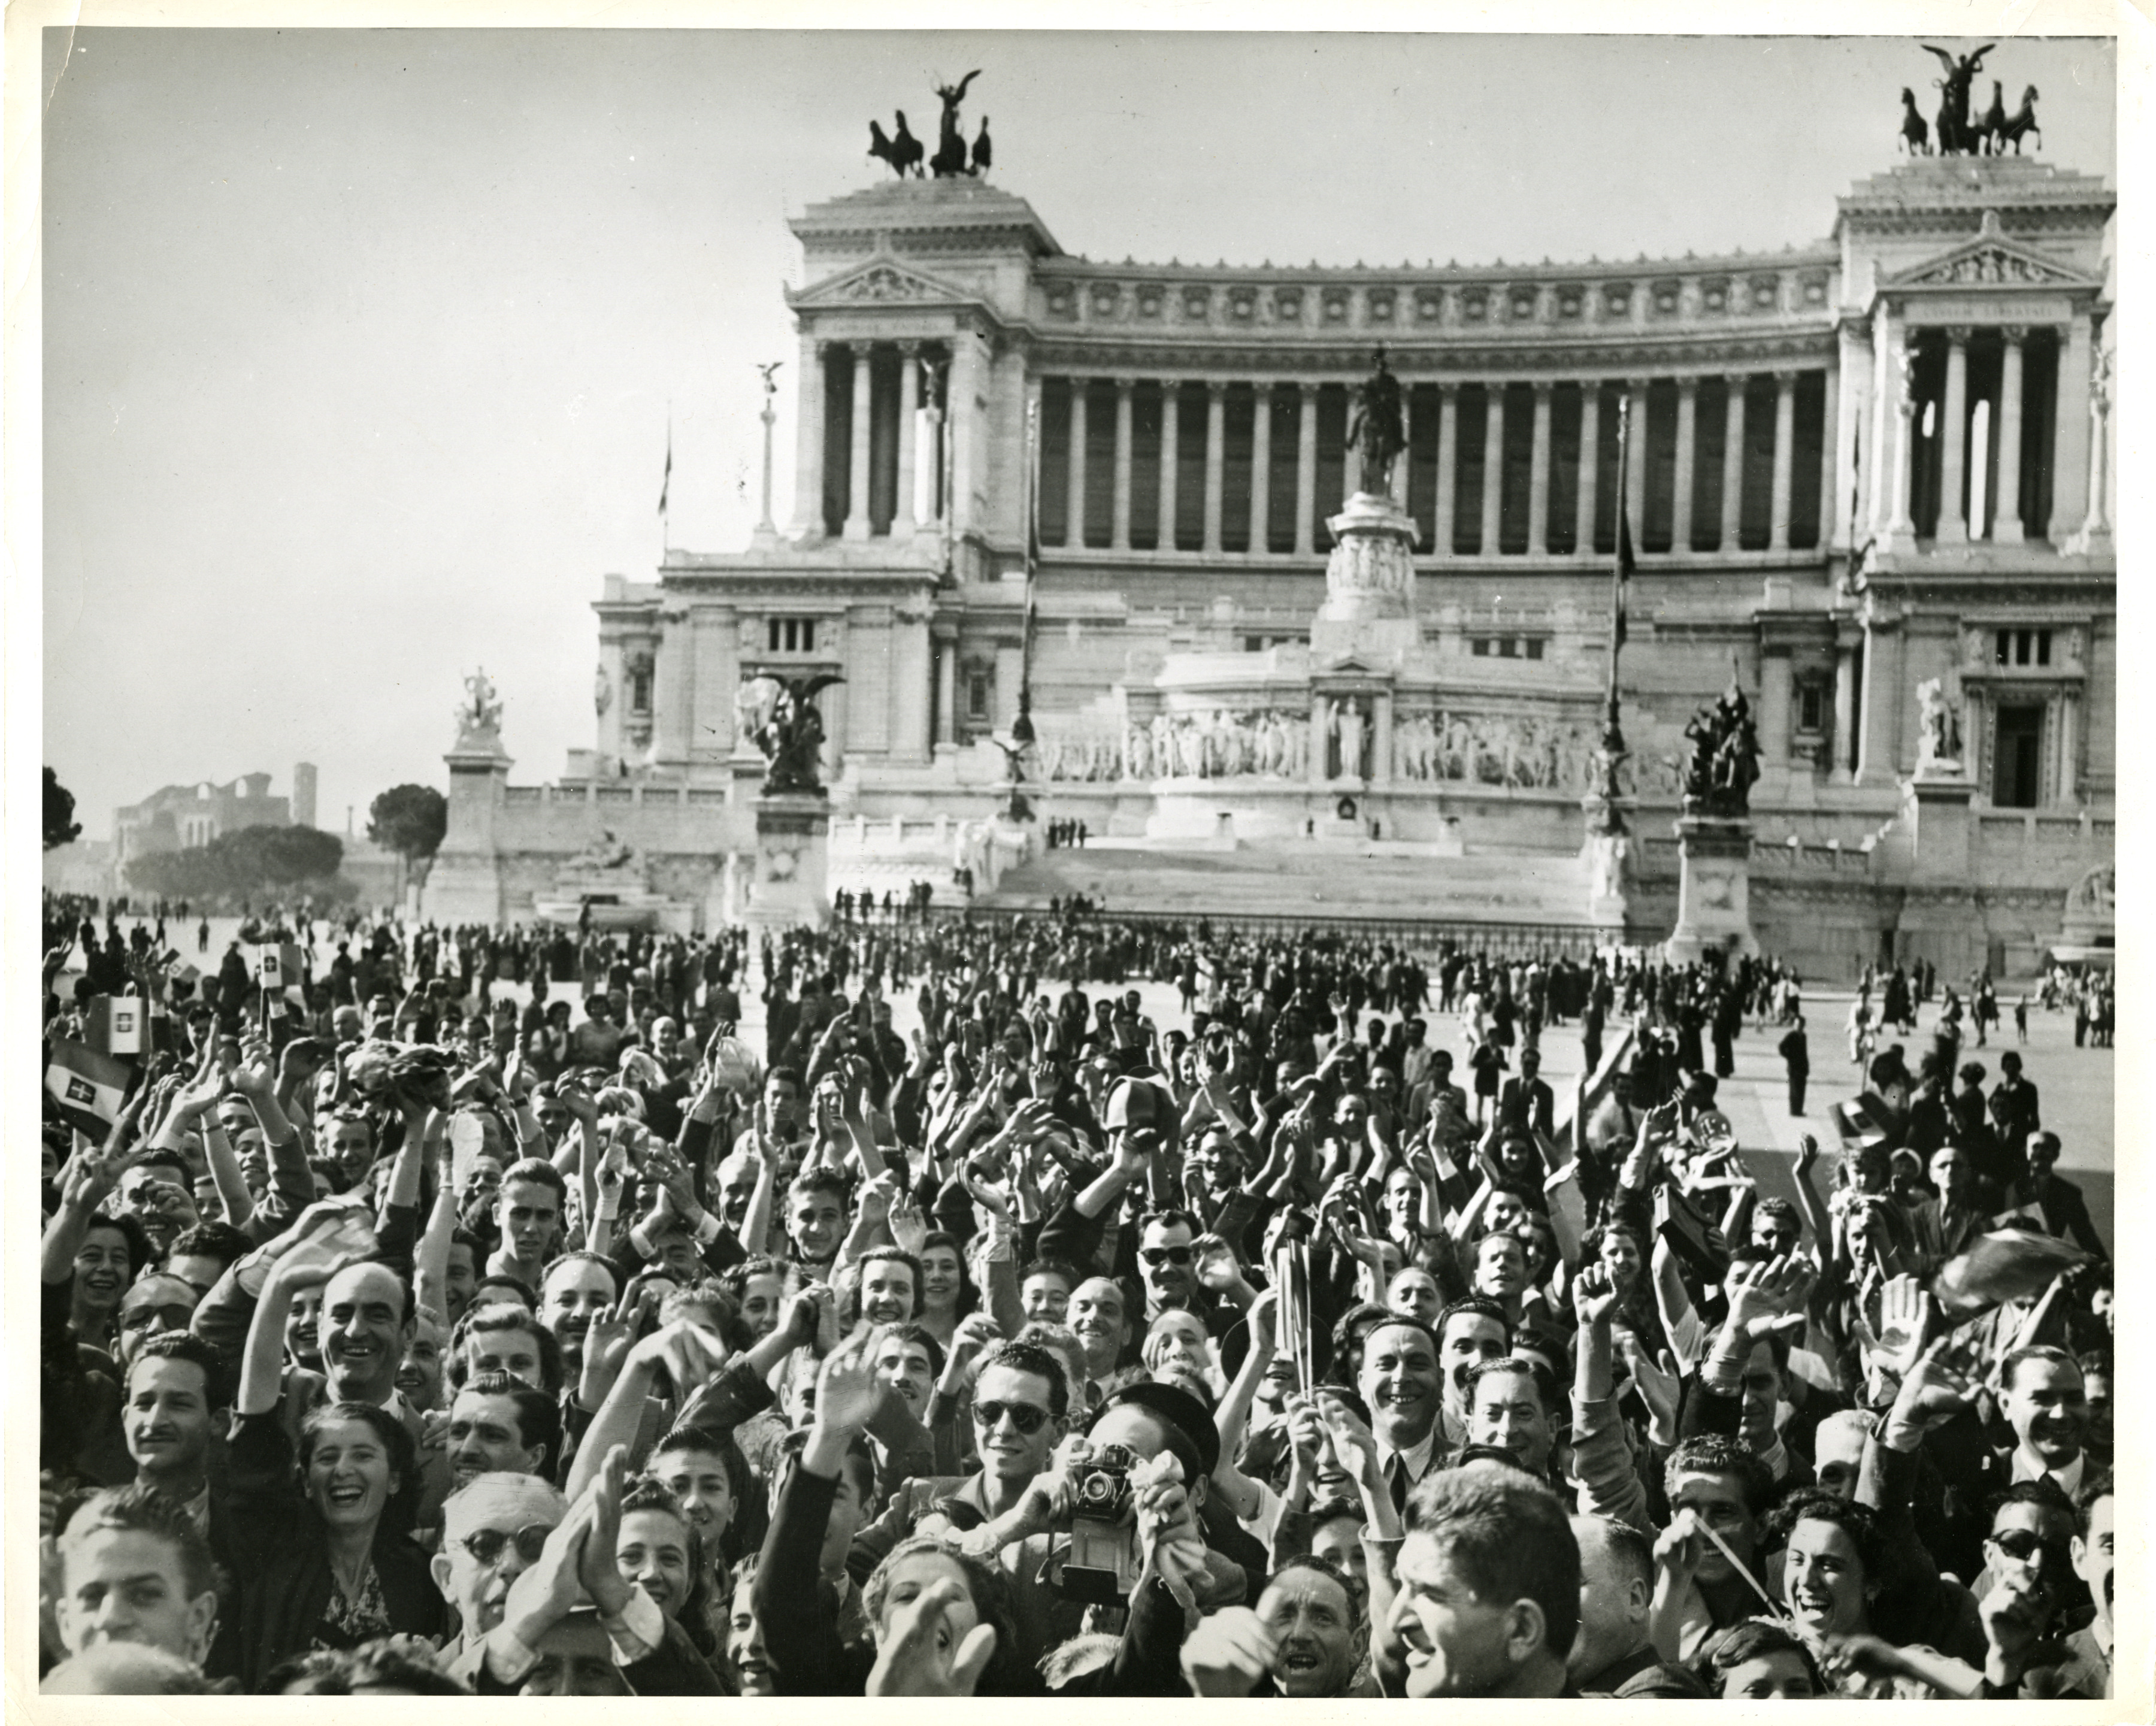 Италия после рима. Италия 20 век начало парлмаент. Апрельское восстание 1945 Италия. Италия 1945г. Италия после второй мировой войны 1960.